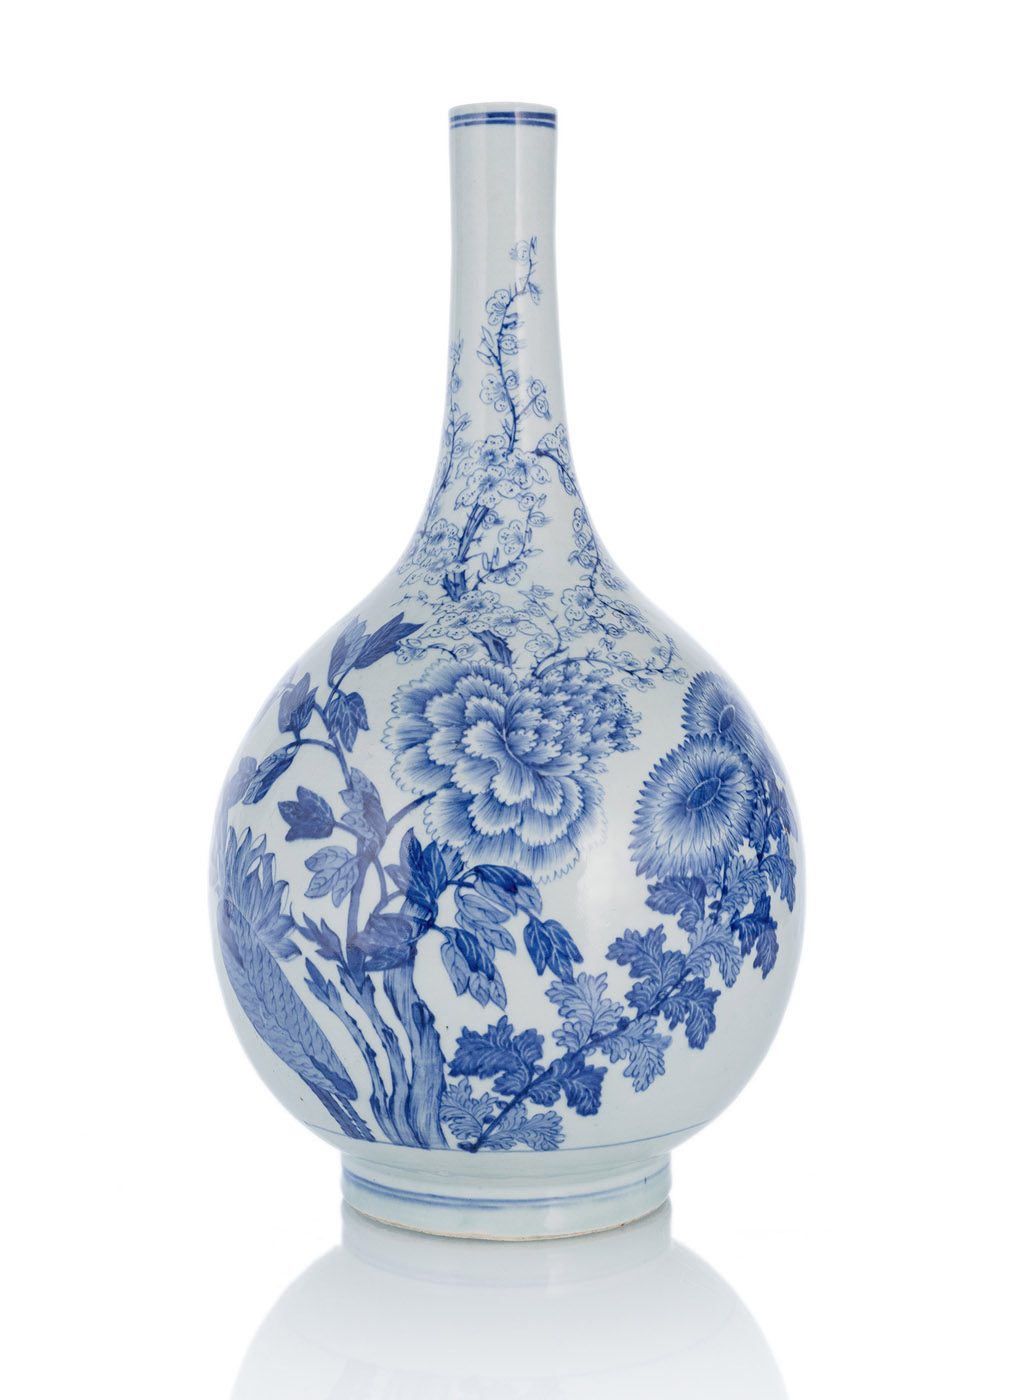 <b>Große Flaschenvase dekoriert mit Päonien, Chrysanthemen und Prunus in Unterglasurblau</b>